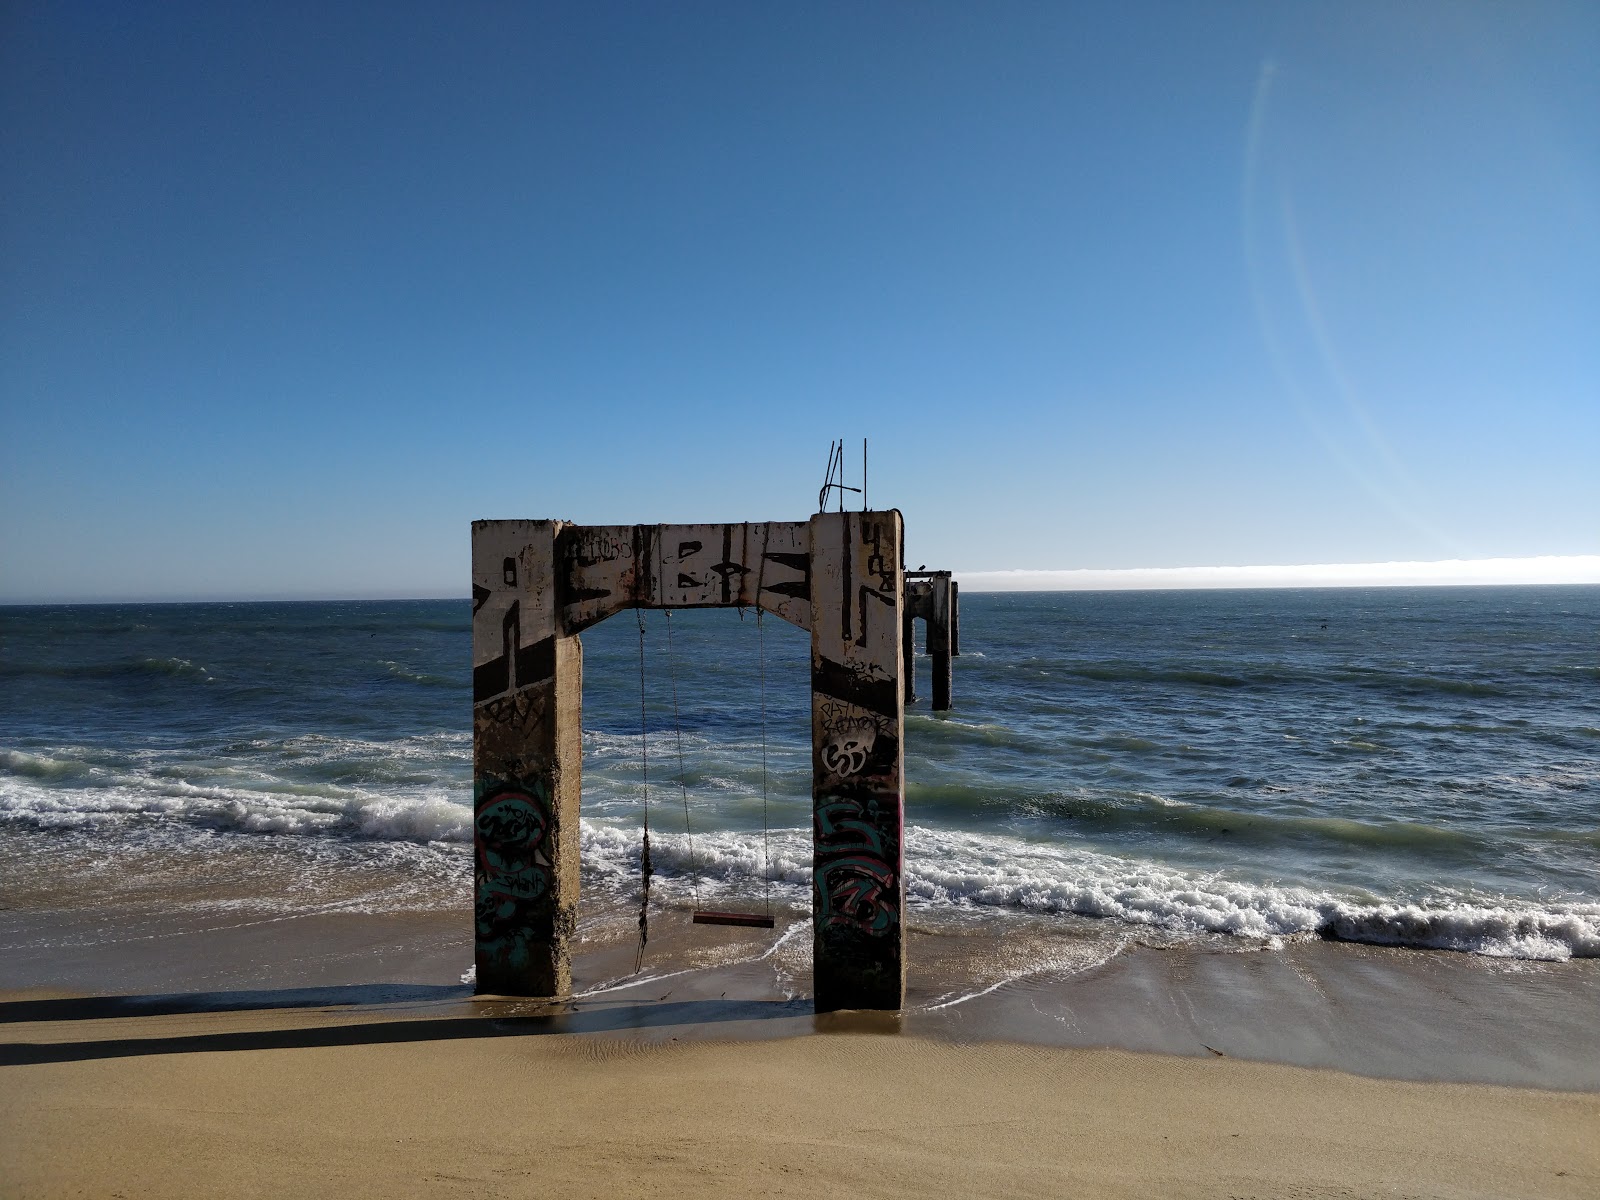 Foto di Davenport Beach ubicato in zona naturale